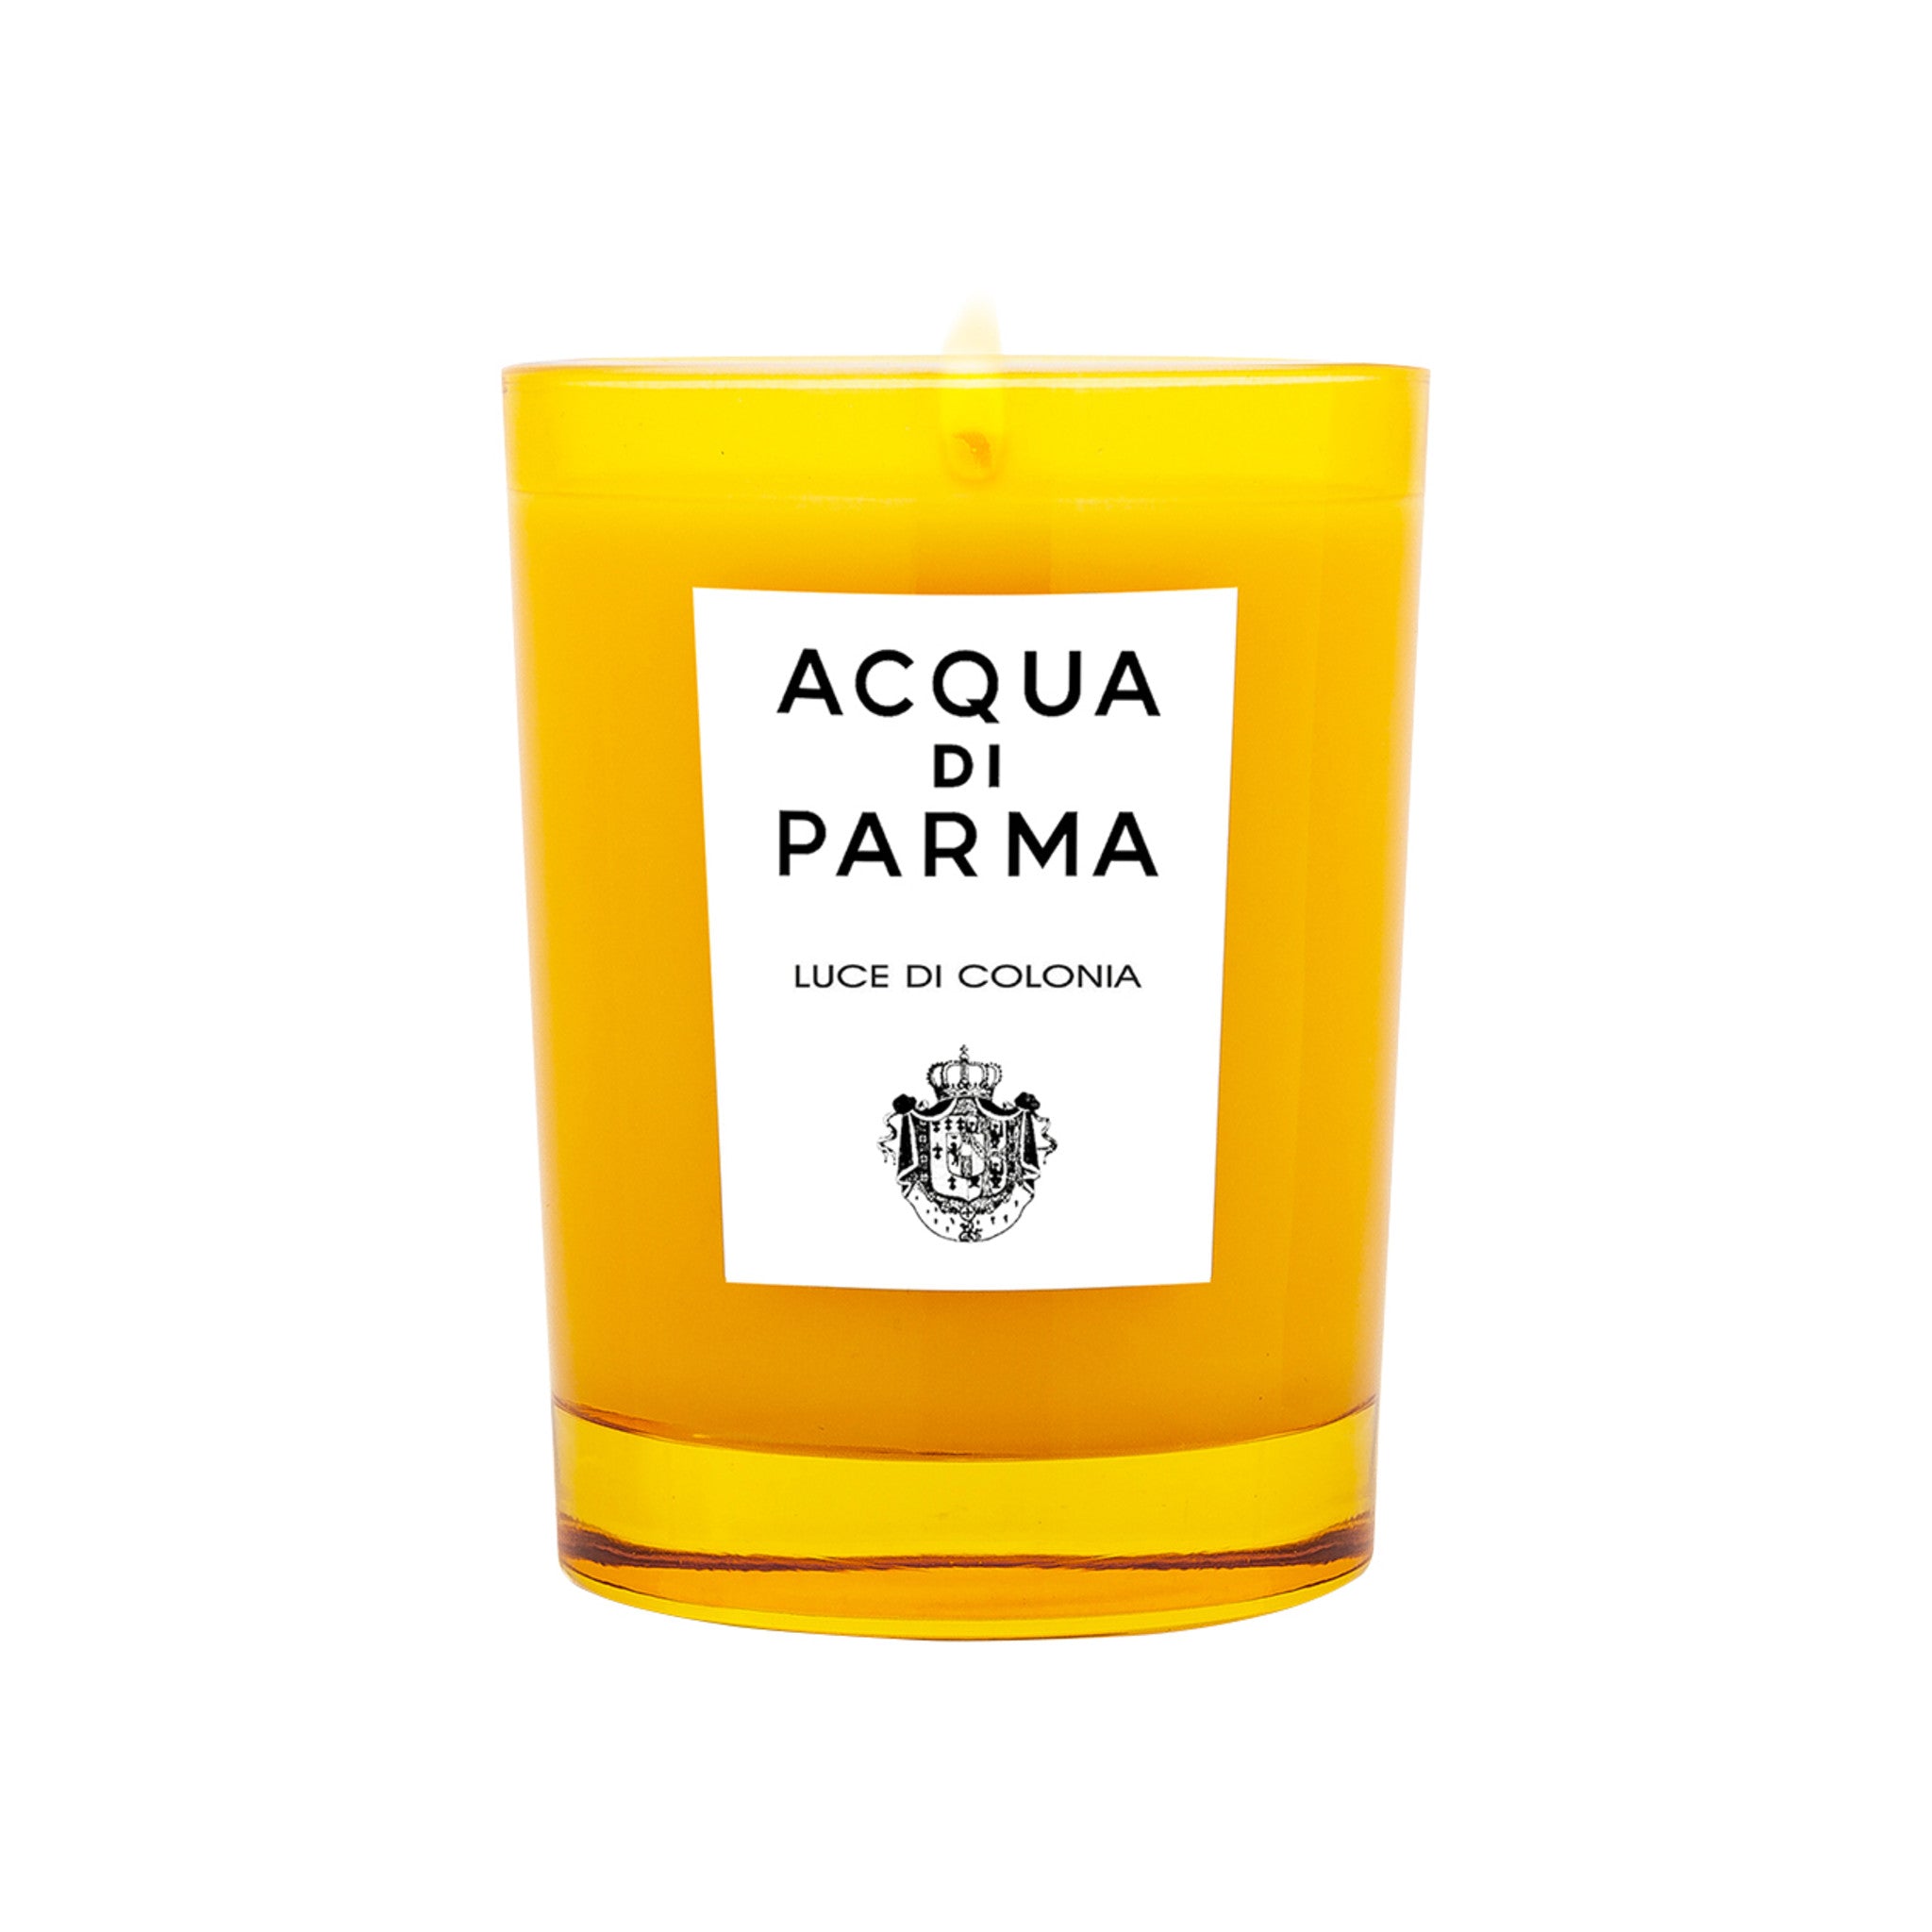 Acqua di Parma Luce Di Colonia Candle main image.